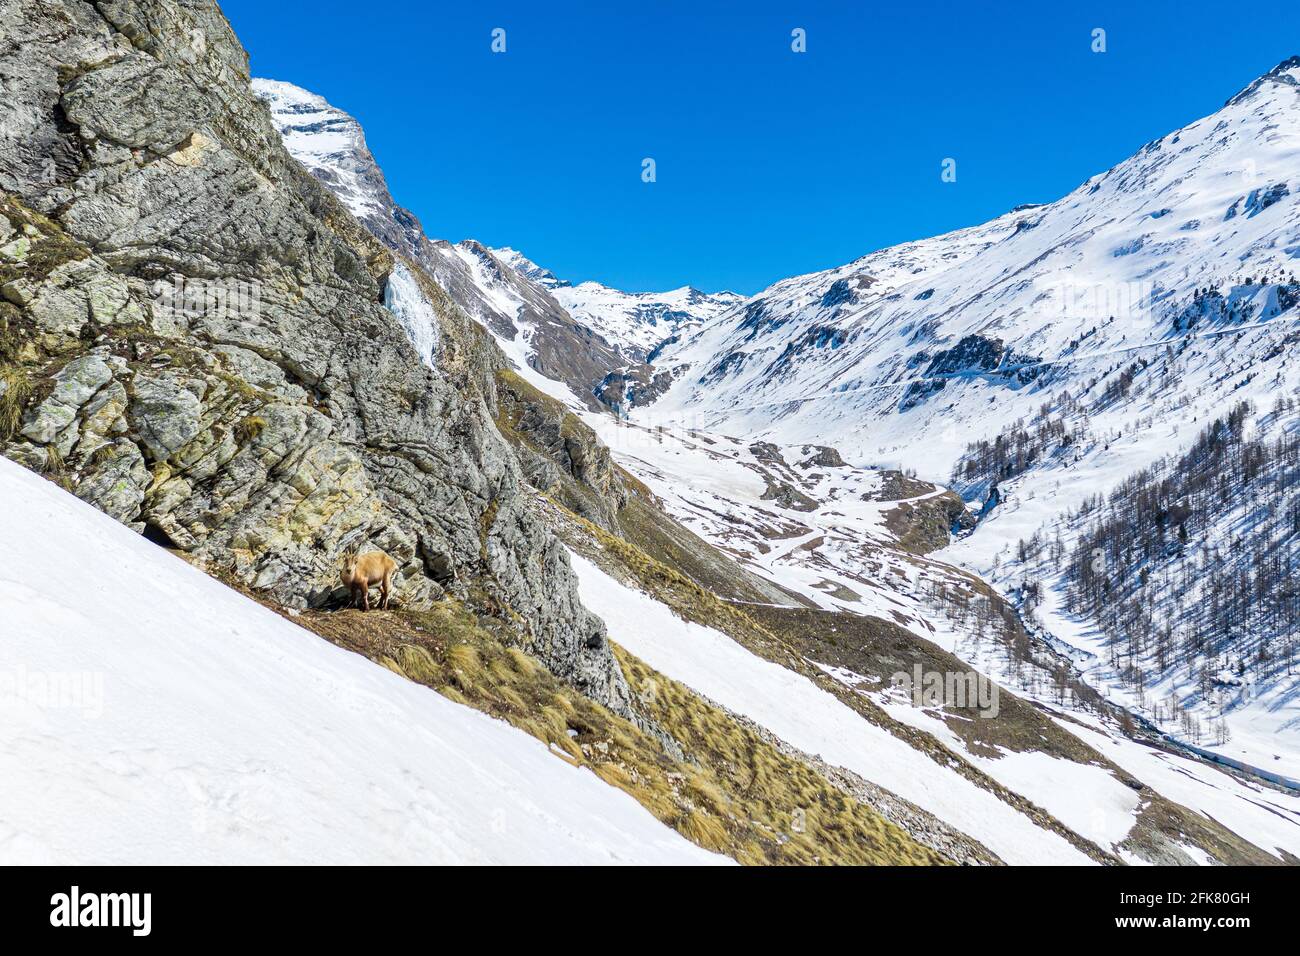 Tiefes Snow Mountain Valley of Alps und ein kleiner Bovid, Gämsen versuchen, sich vor der Kamera zu verstecken. Stockfoto